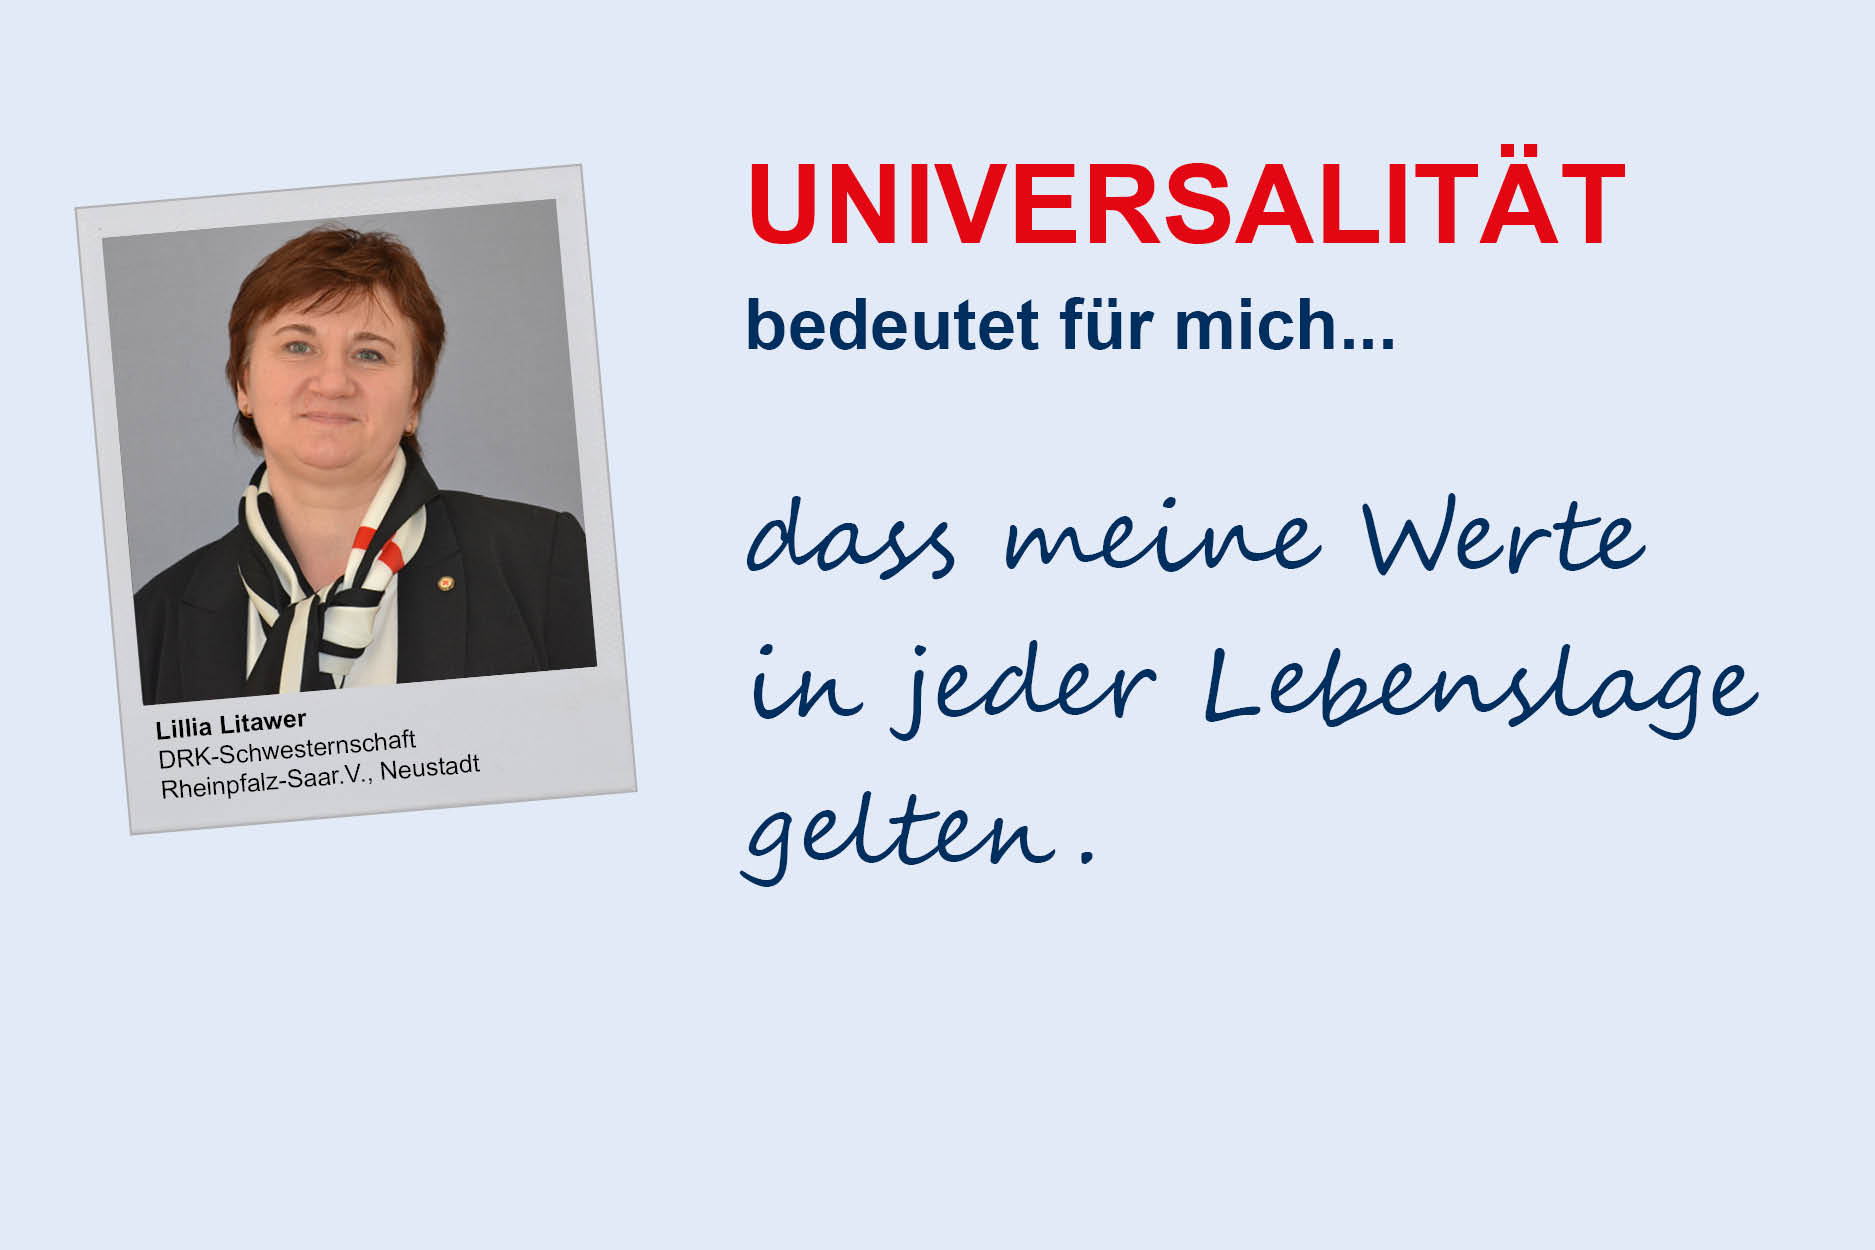 Lillia Litawer, DRK-Schwesternschaft Rheinpfalz-Saar e.V./Neustadt
**Universalität**